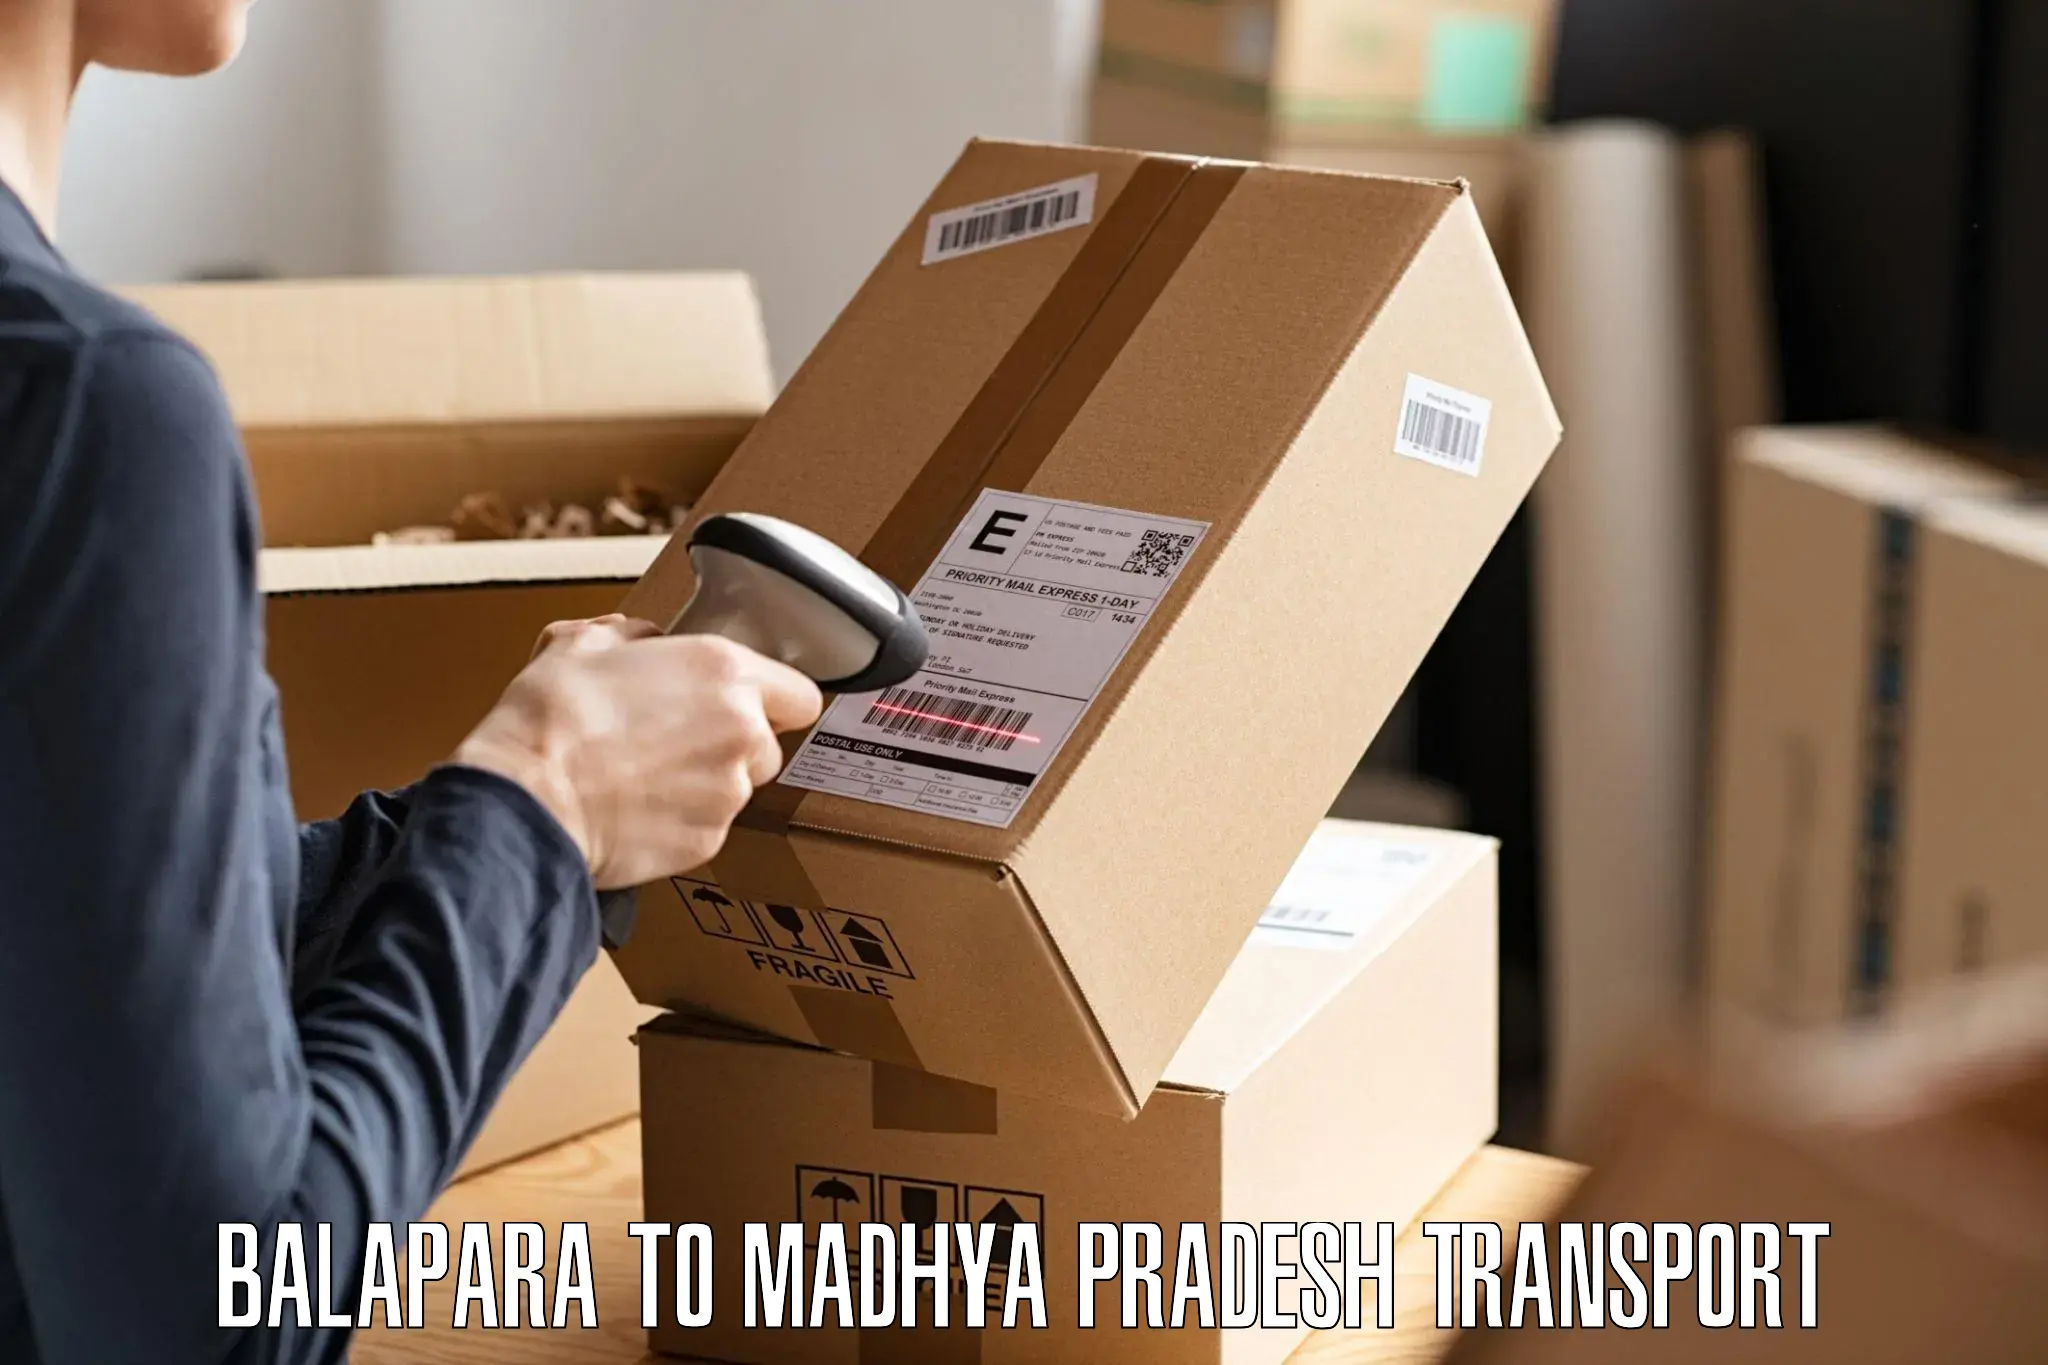 Cargo transport services Balapara to Bichhiya